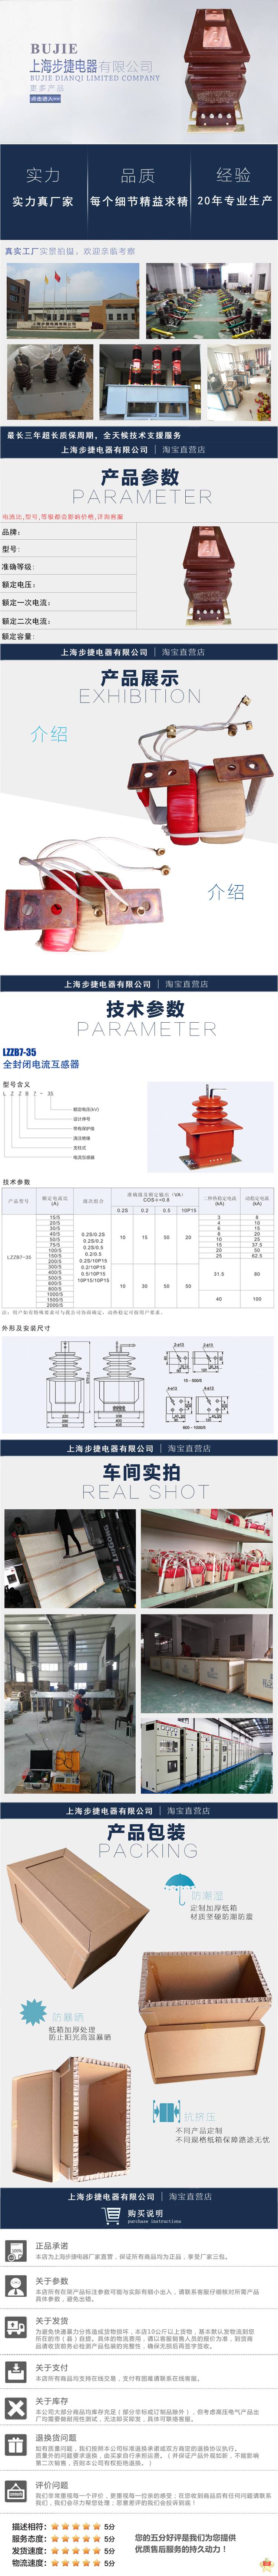 步捷电器 LZZBJ9-12 电流互感器LZZBJ9-12 LZZBJ9-12,LZZBJ9-10,LZZBJ9-10A1,电流互感器,10KV电流互感器